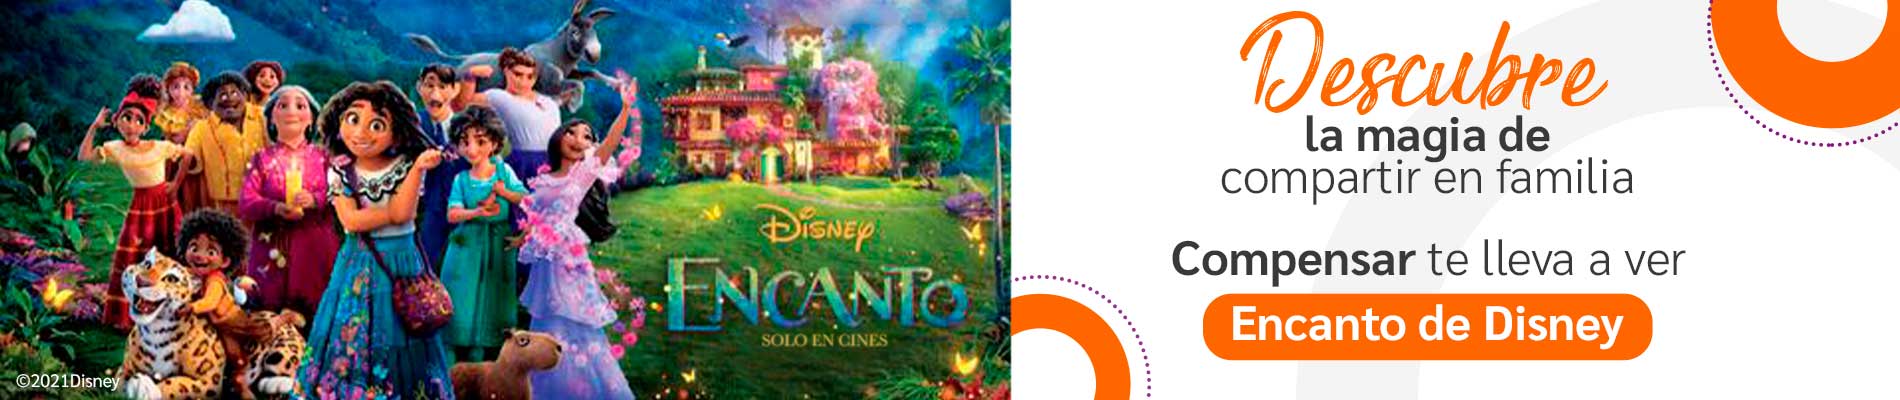 Banner película Encanto de Disney